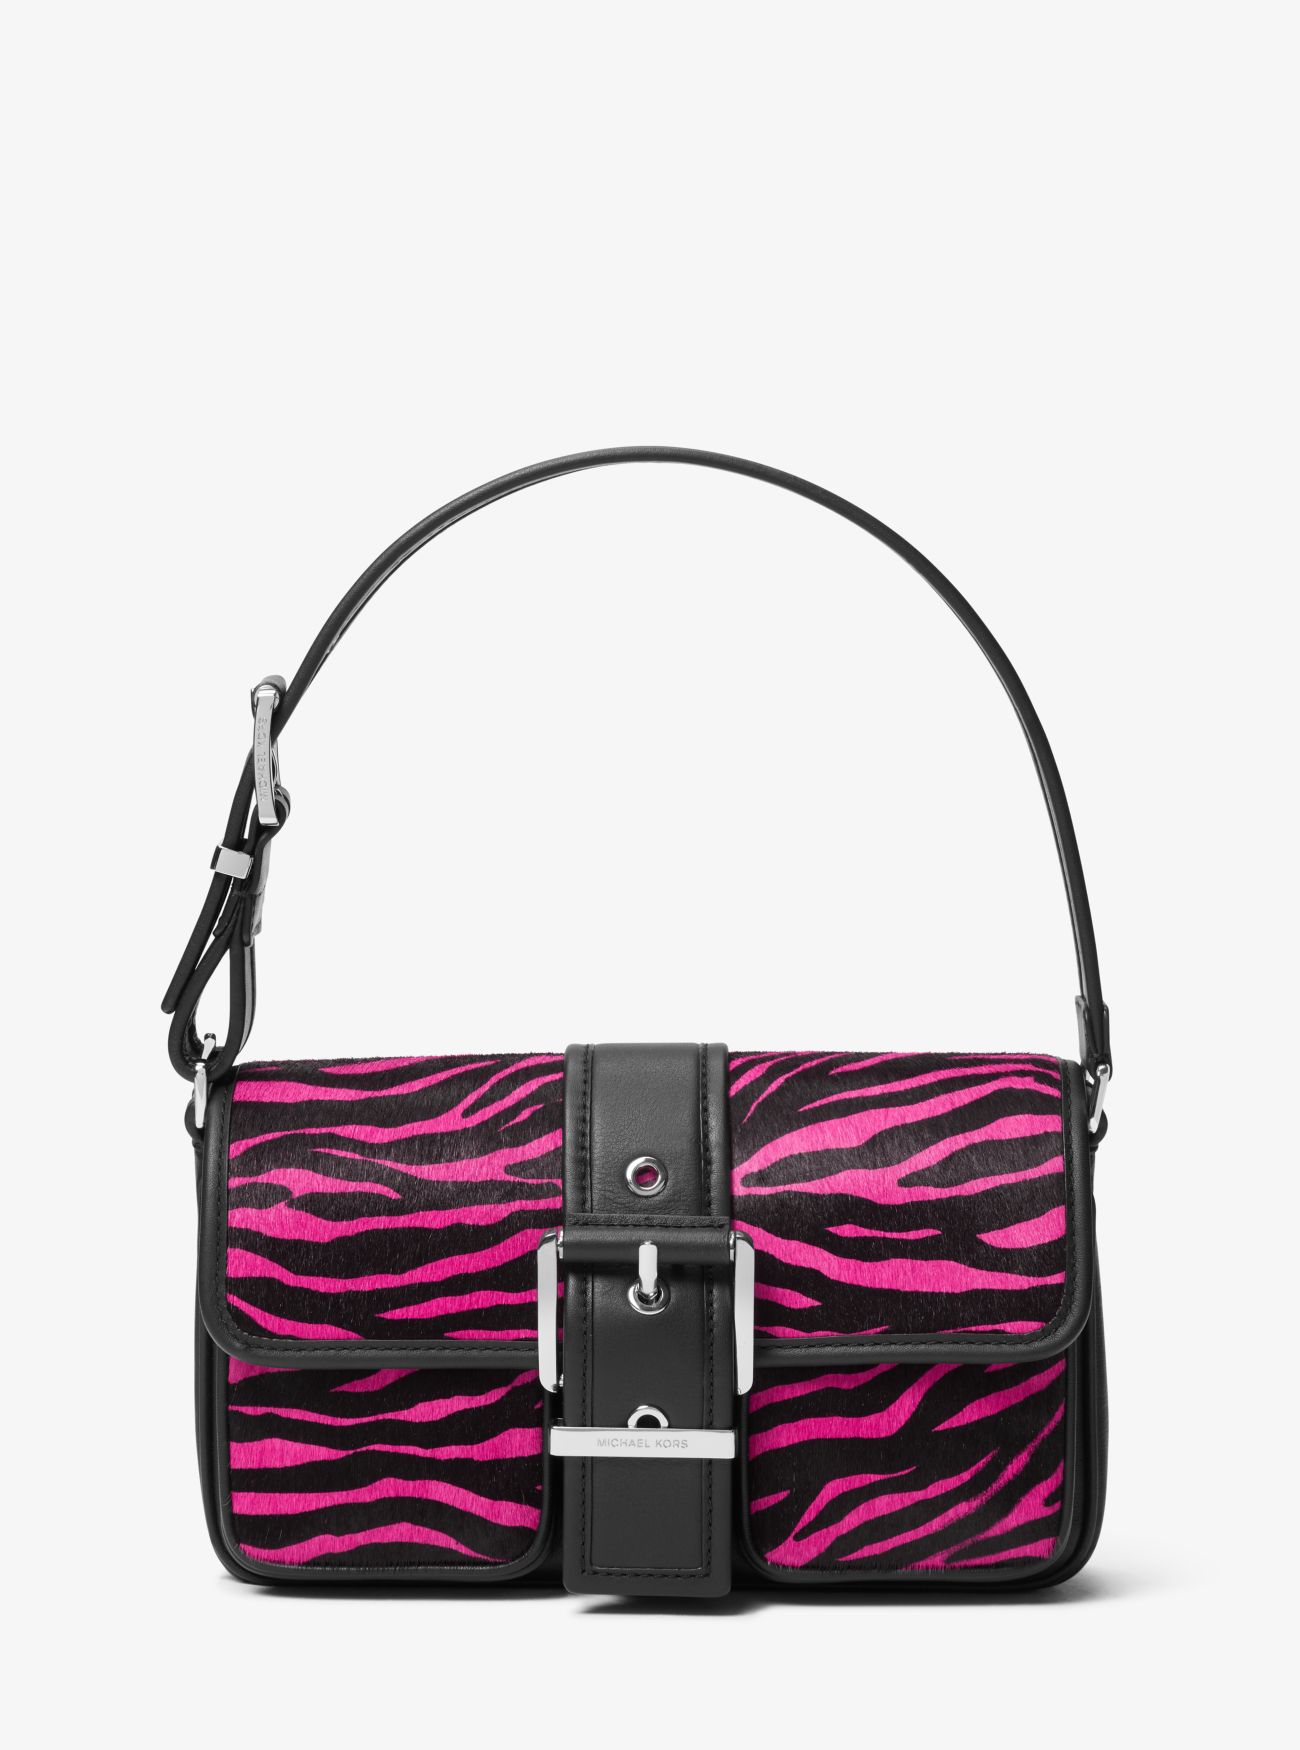 MK Colby Medium Zebra Print Calf Hair Shoulder Bag - Pink - Michael Kors